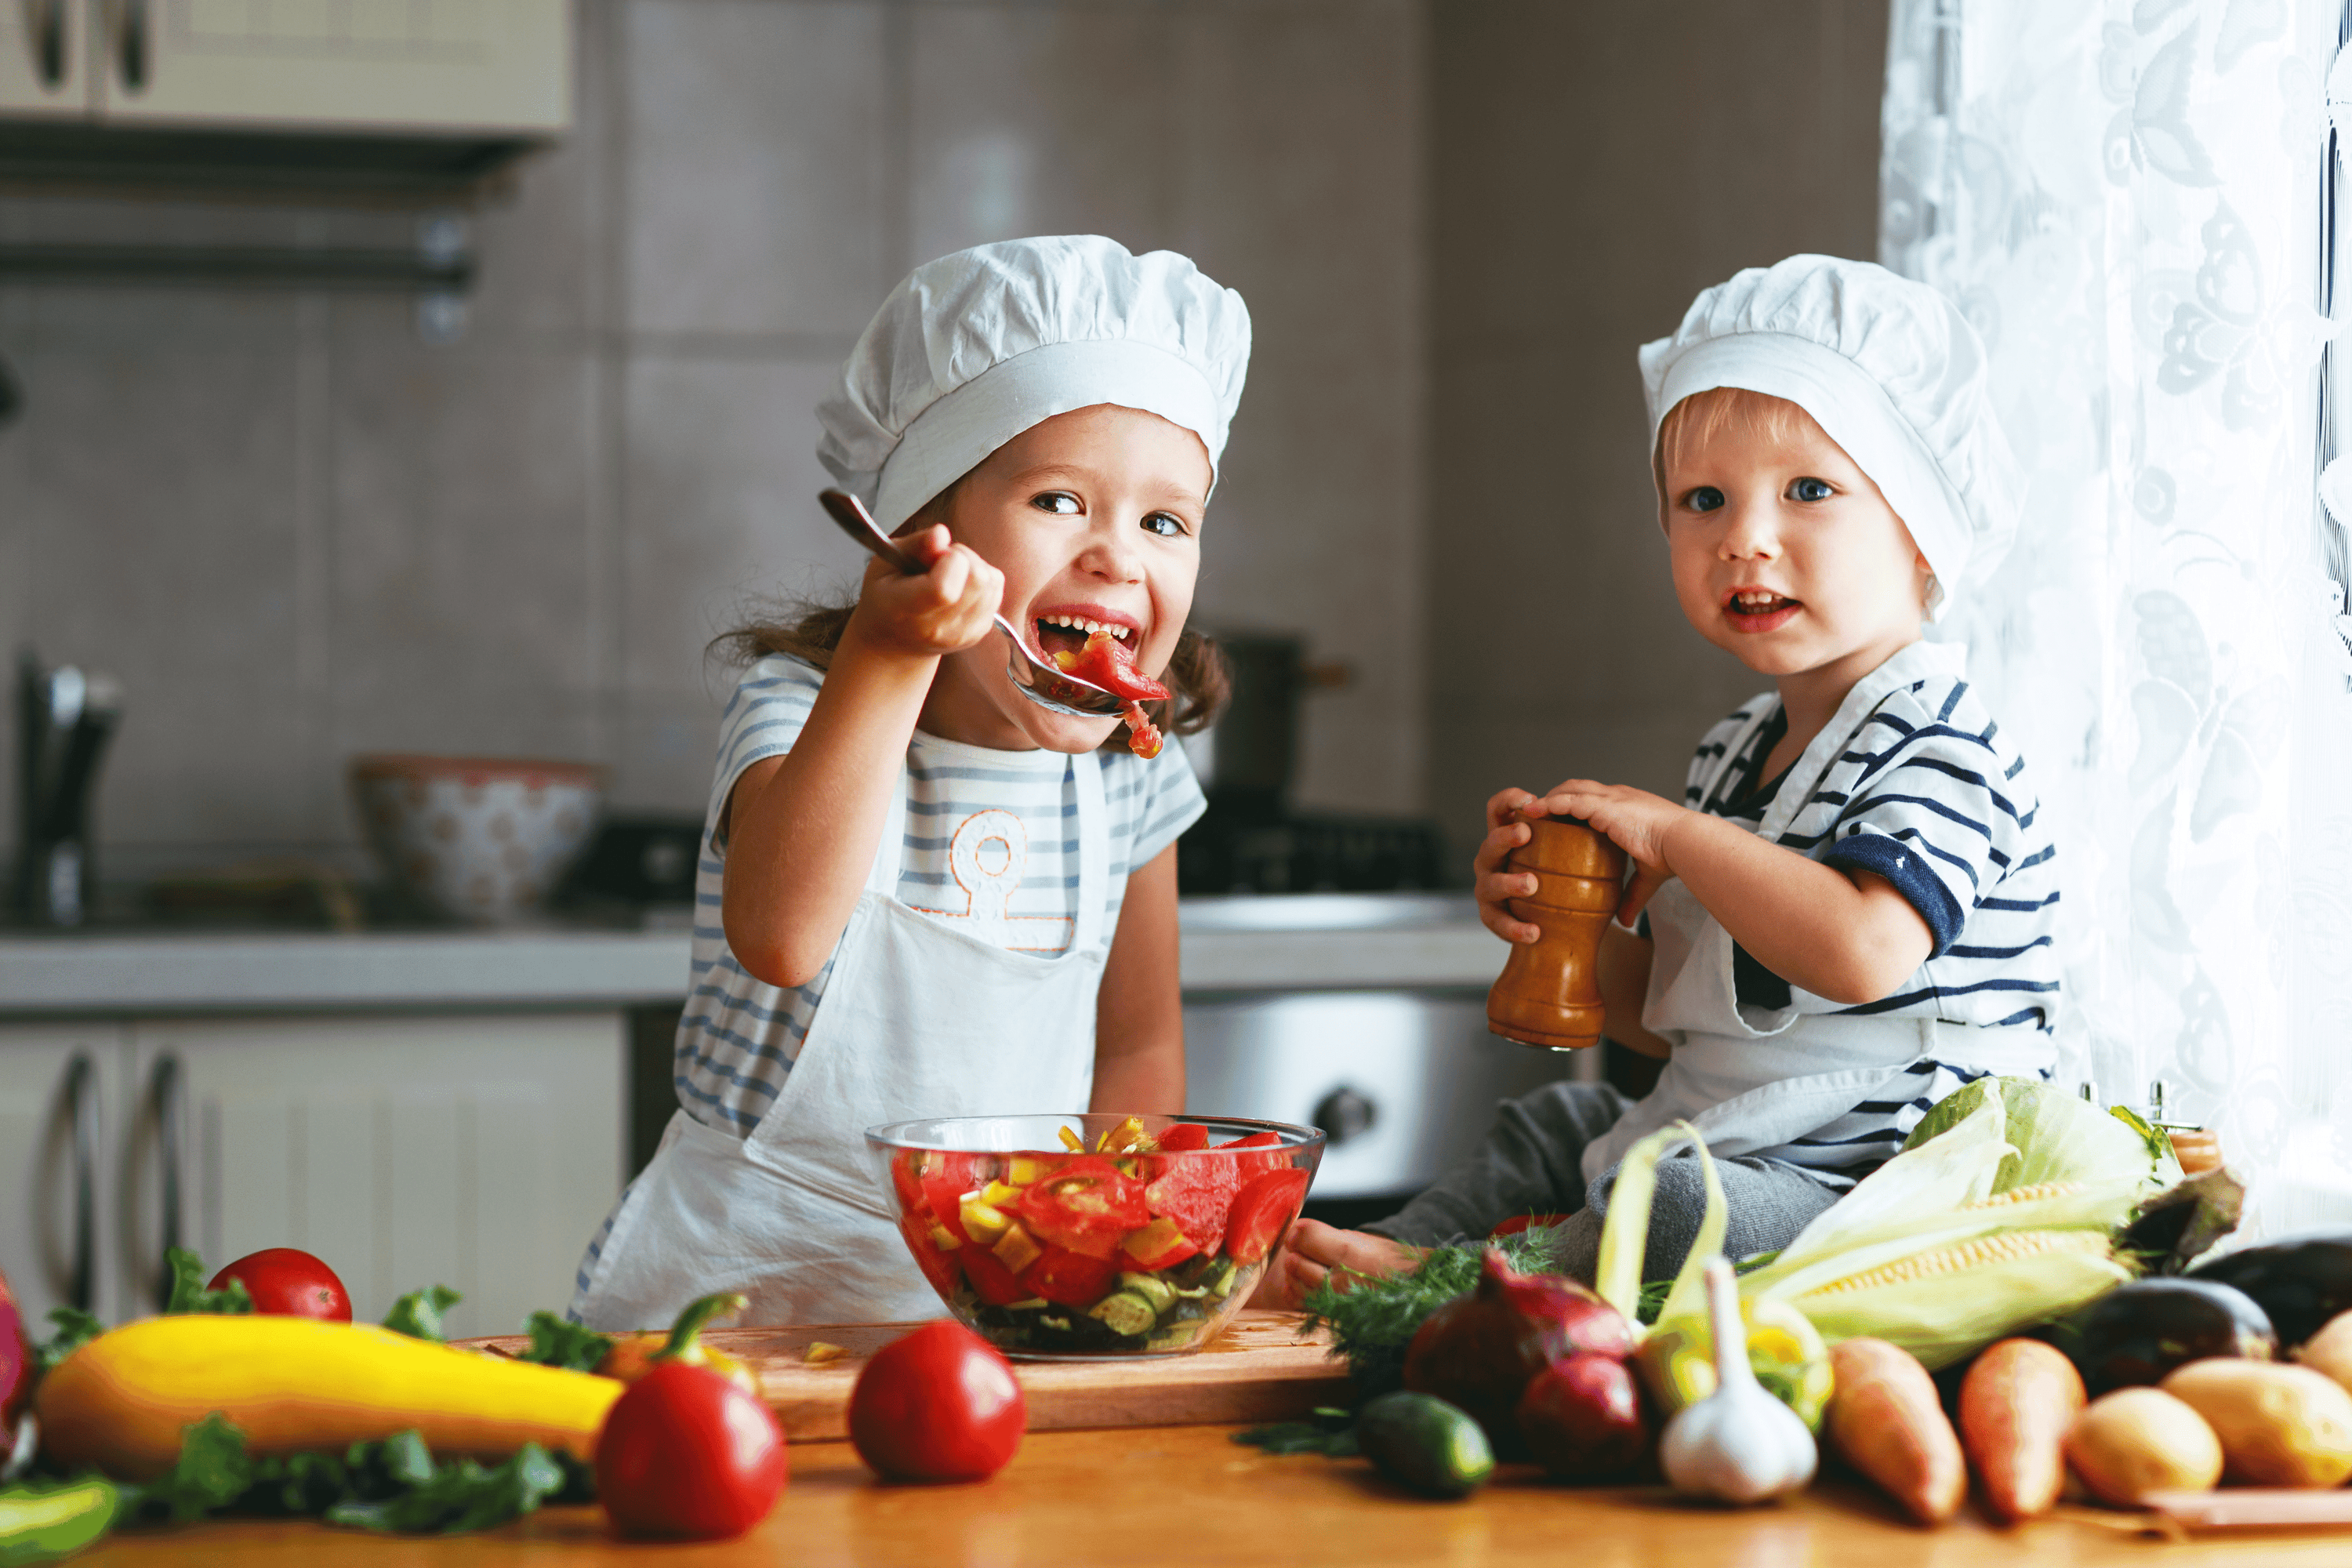 Comment est ce que la nourriture peut avoir un impact sur l’humeur de nos enfants?